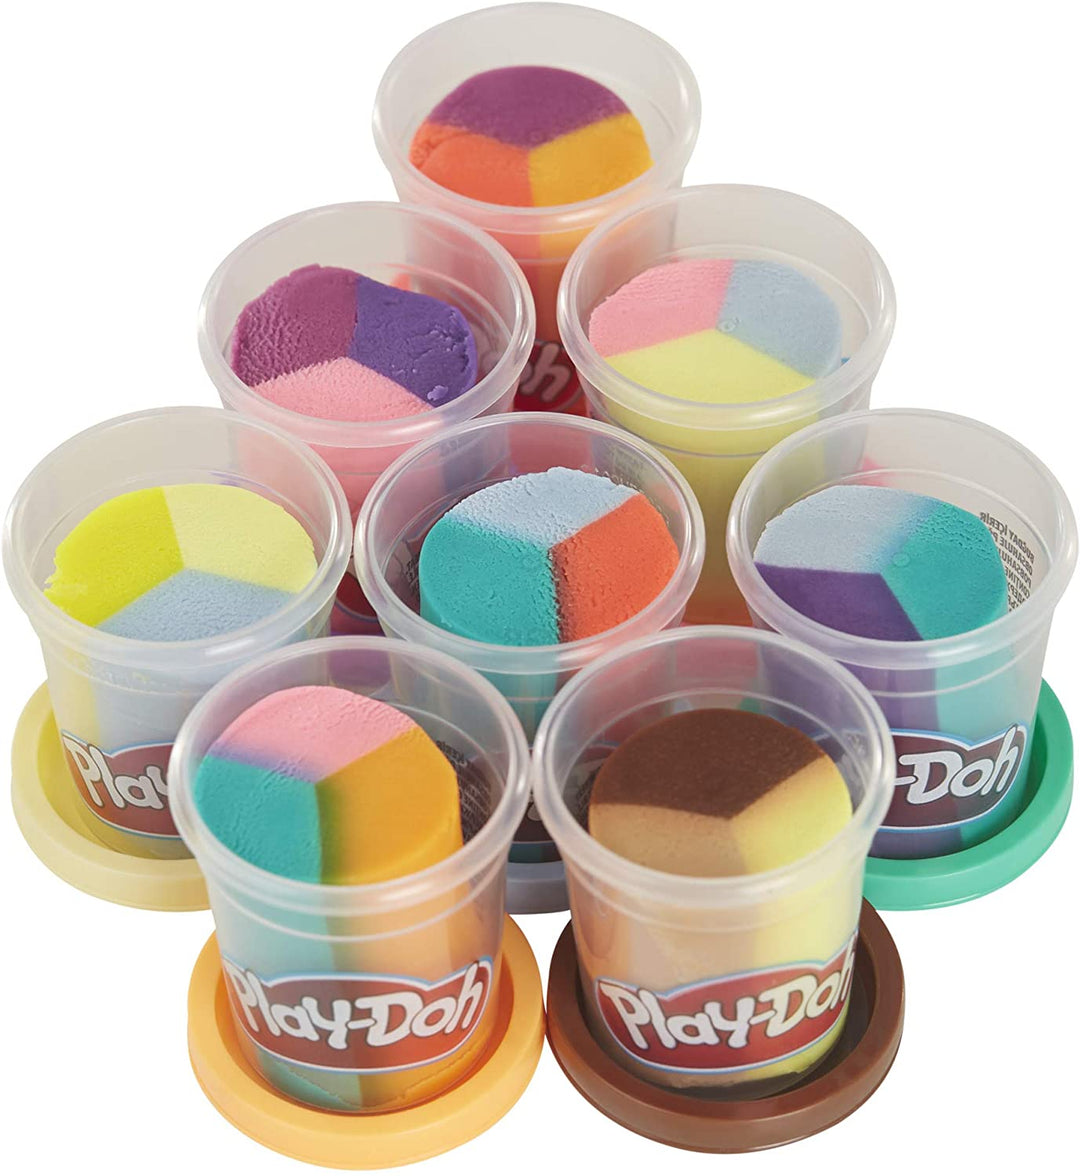 Play-Doh Crazy Cuts Stylist Friseursalon Rollenspielspielzeug für Kinder ab 3 Jahren mit 8 dreifarbigen Dosen, je 2 Unzen, ungiftig, F1260